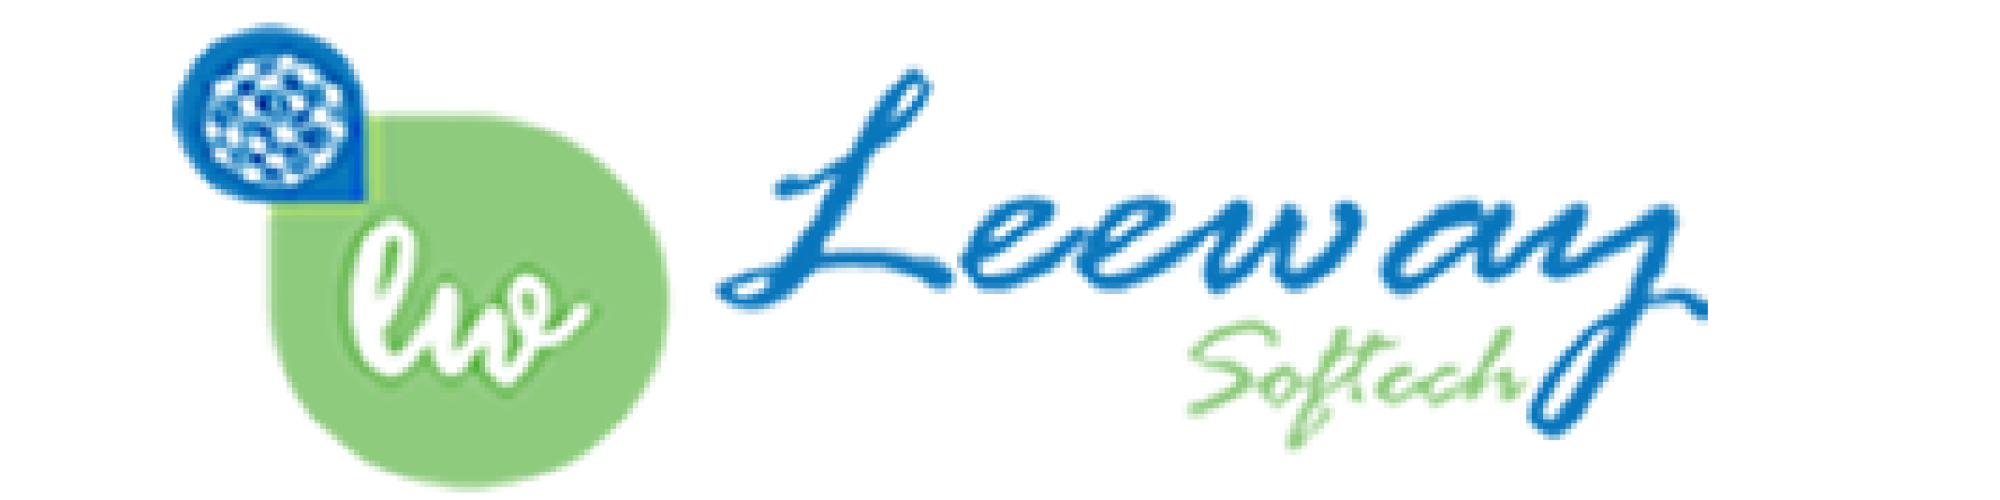 Leeway Softech Pvt Ltd